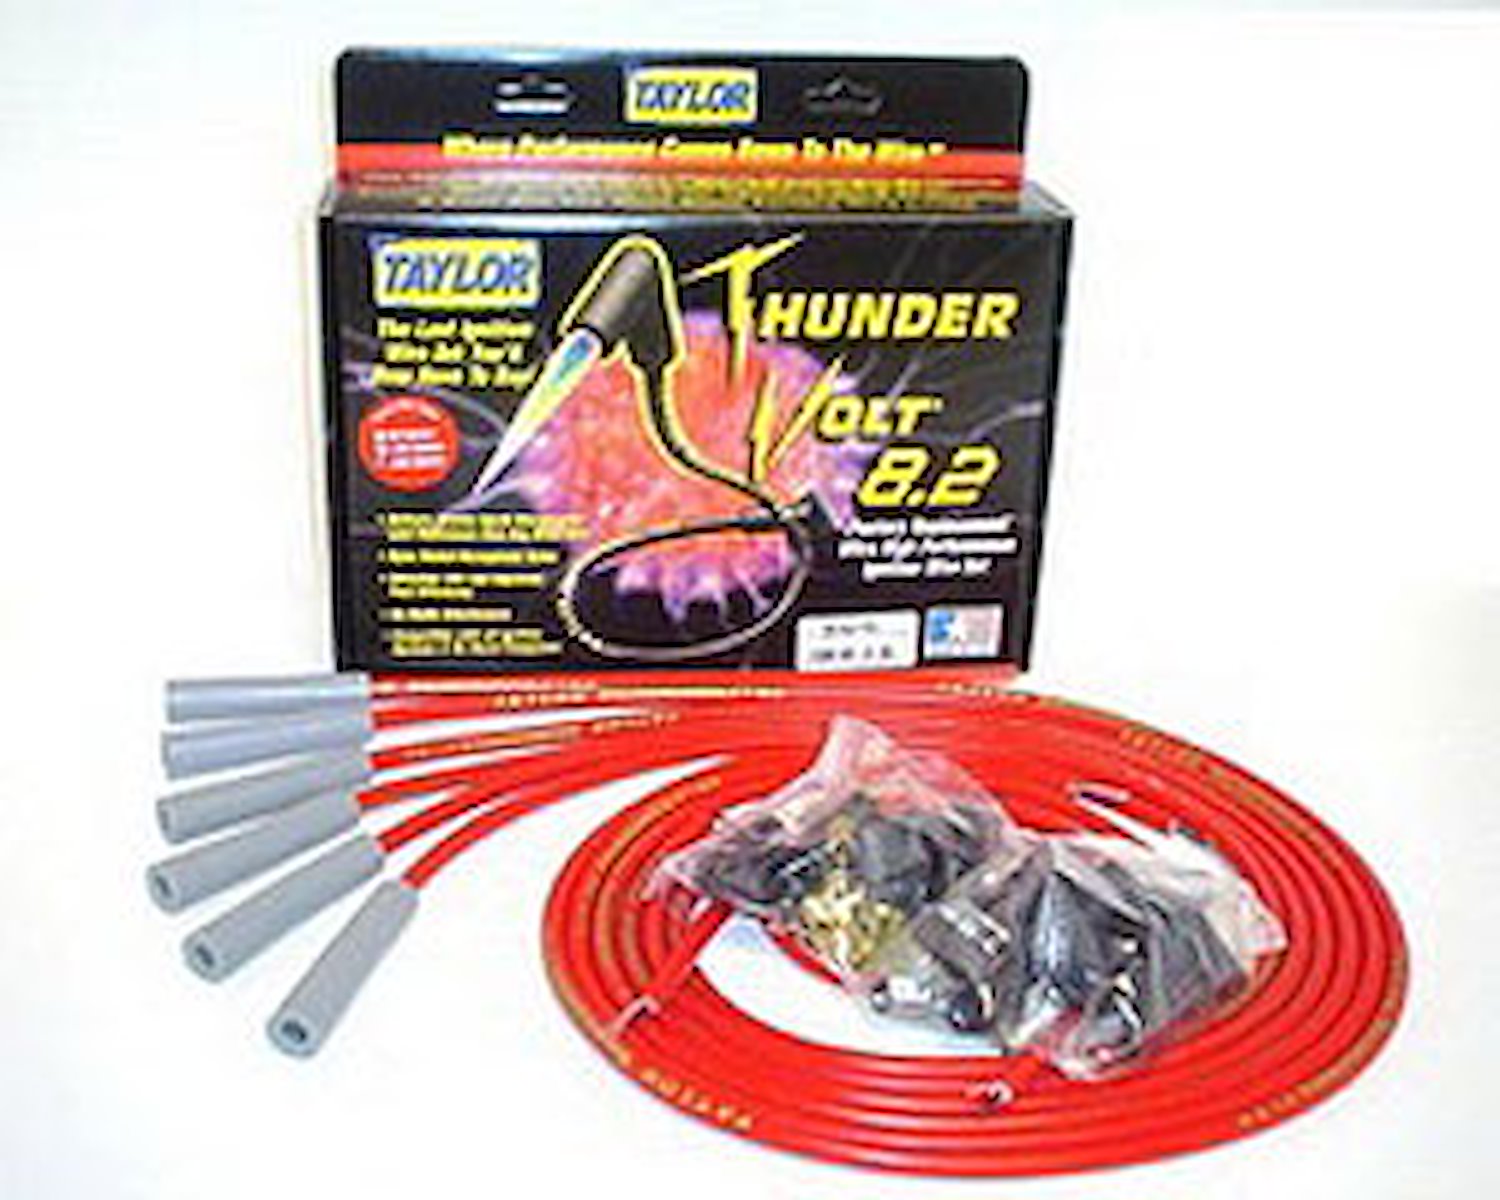 ThunderVolt 8.2mm Spark Plug Wires Universal Fit, 6-Cylinder